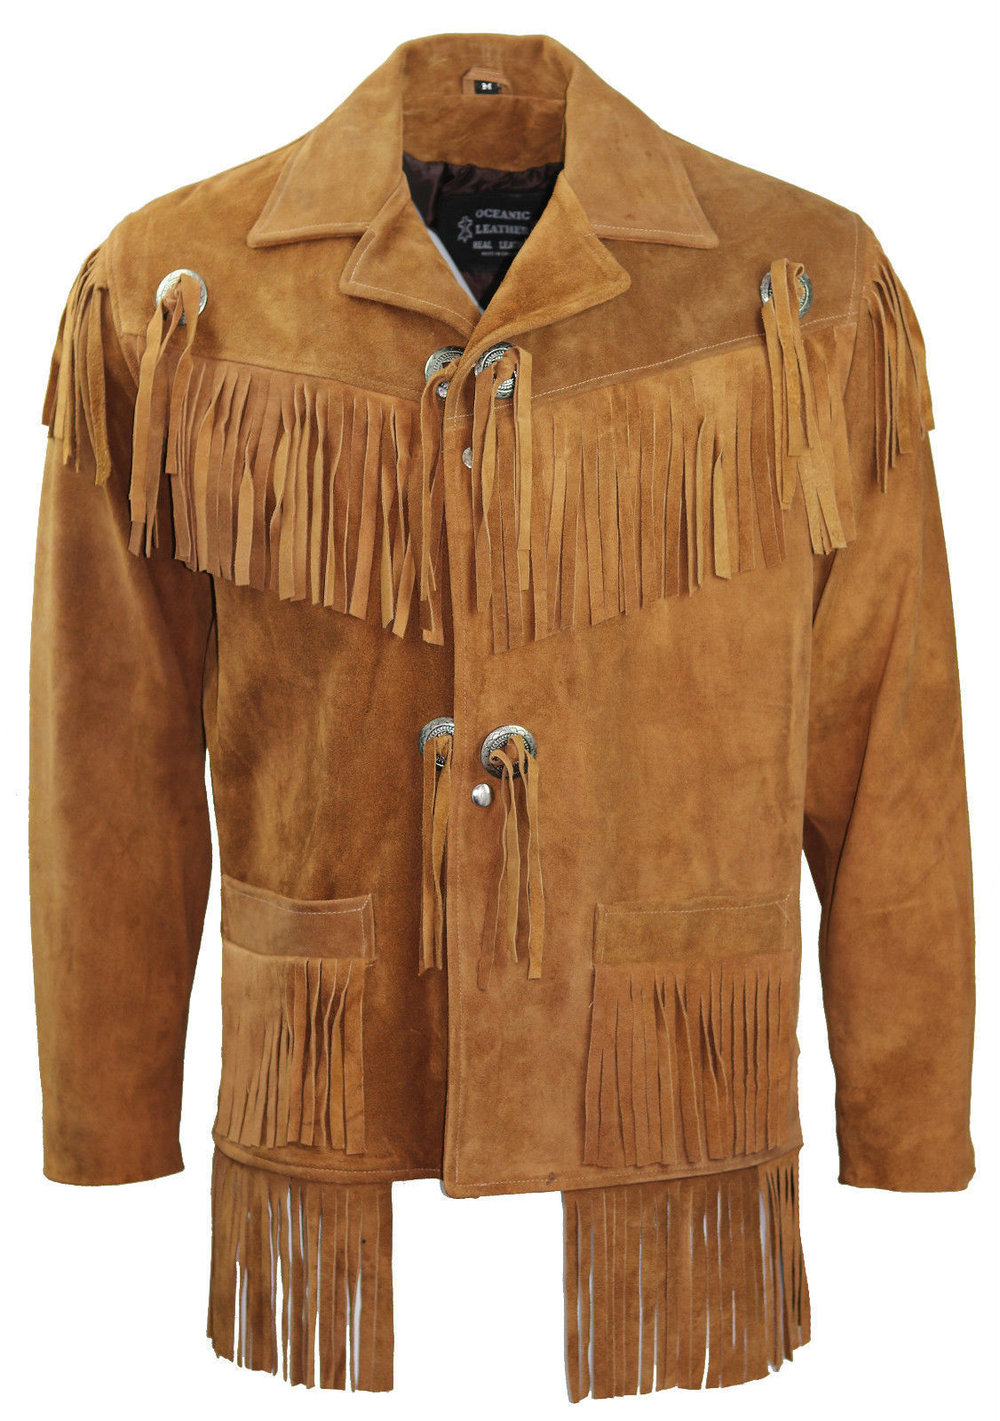 Native American Jacket Genuine Suede Leather Jacket with Fringe Cowboy Western Stylish Coat